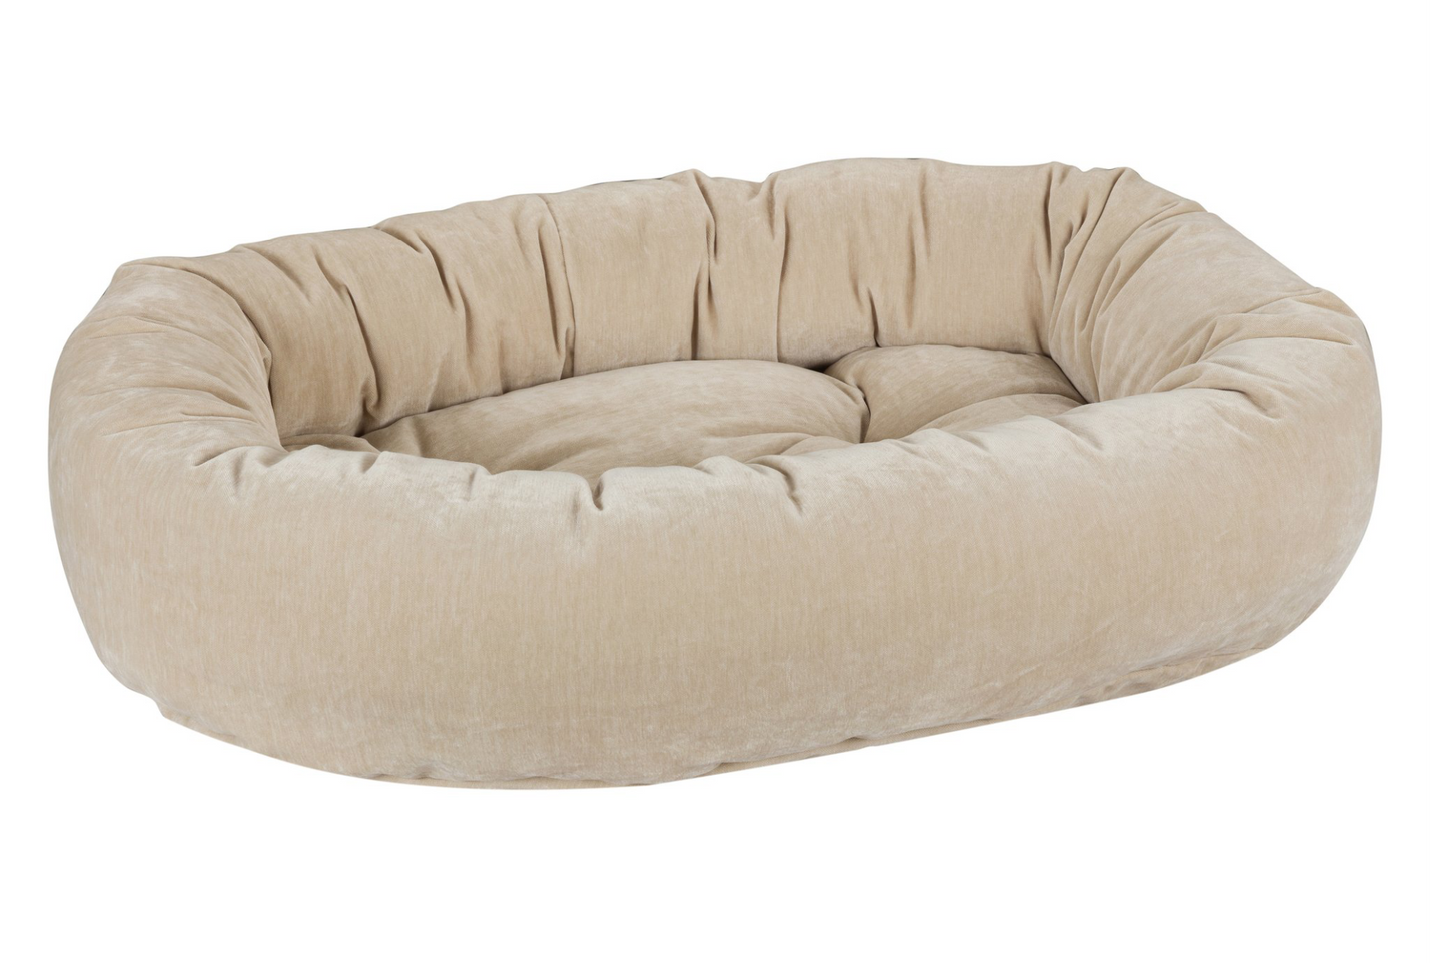 Microvelvet - Donut Bed - Linen - Dog Bed